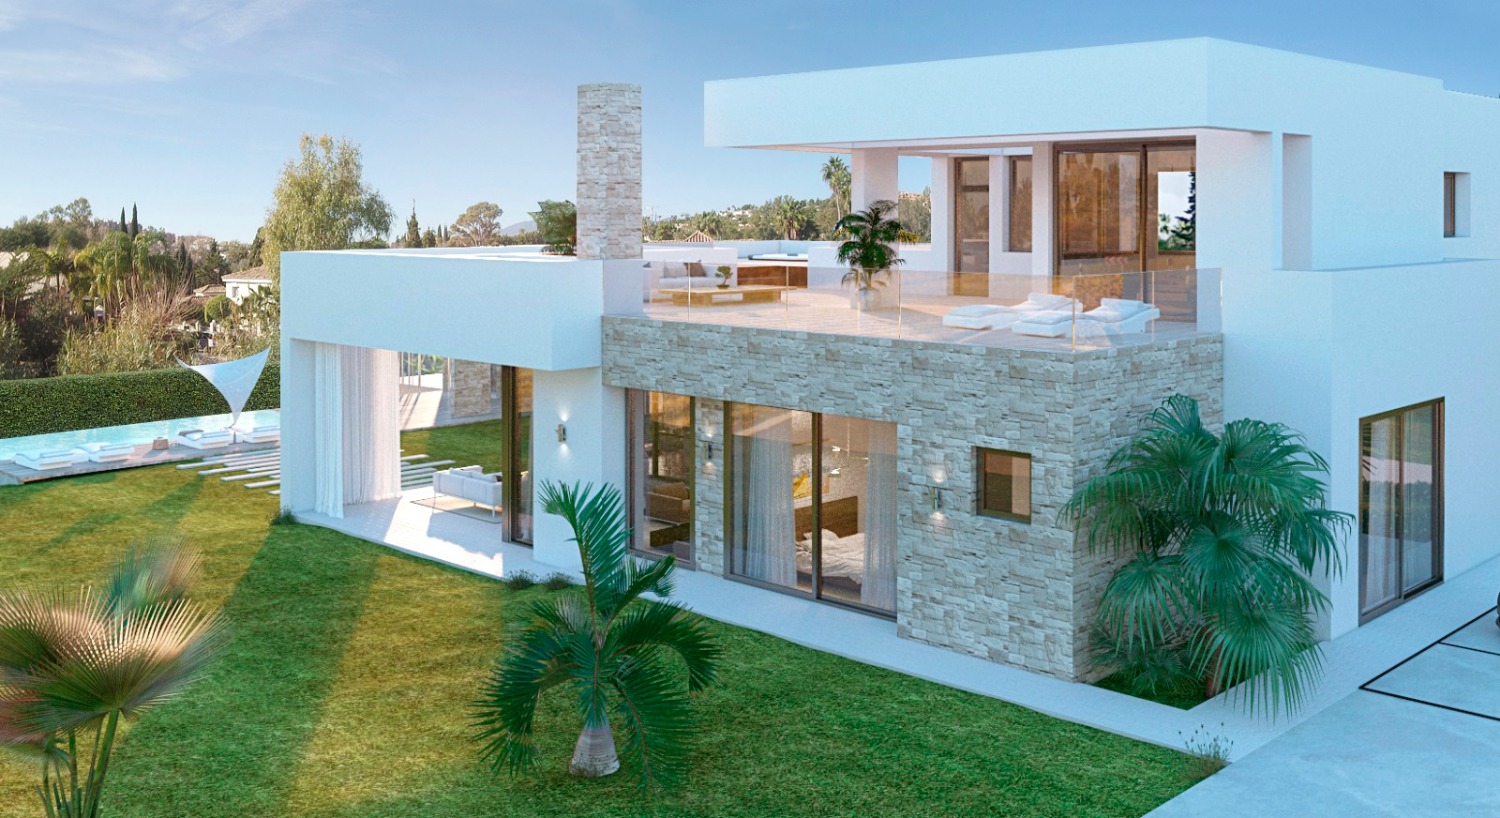 Una casa capolavoro con licenze di costruzione complete e soddisfare tutti i requisiti ambientali sul posto.